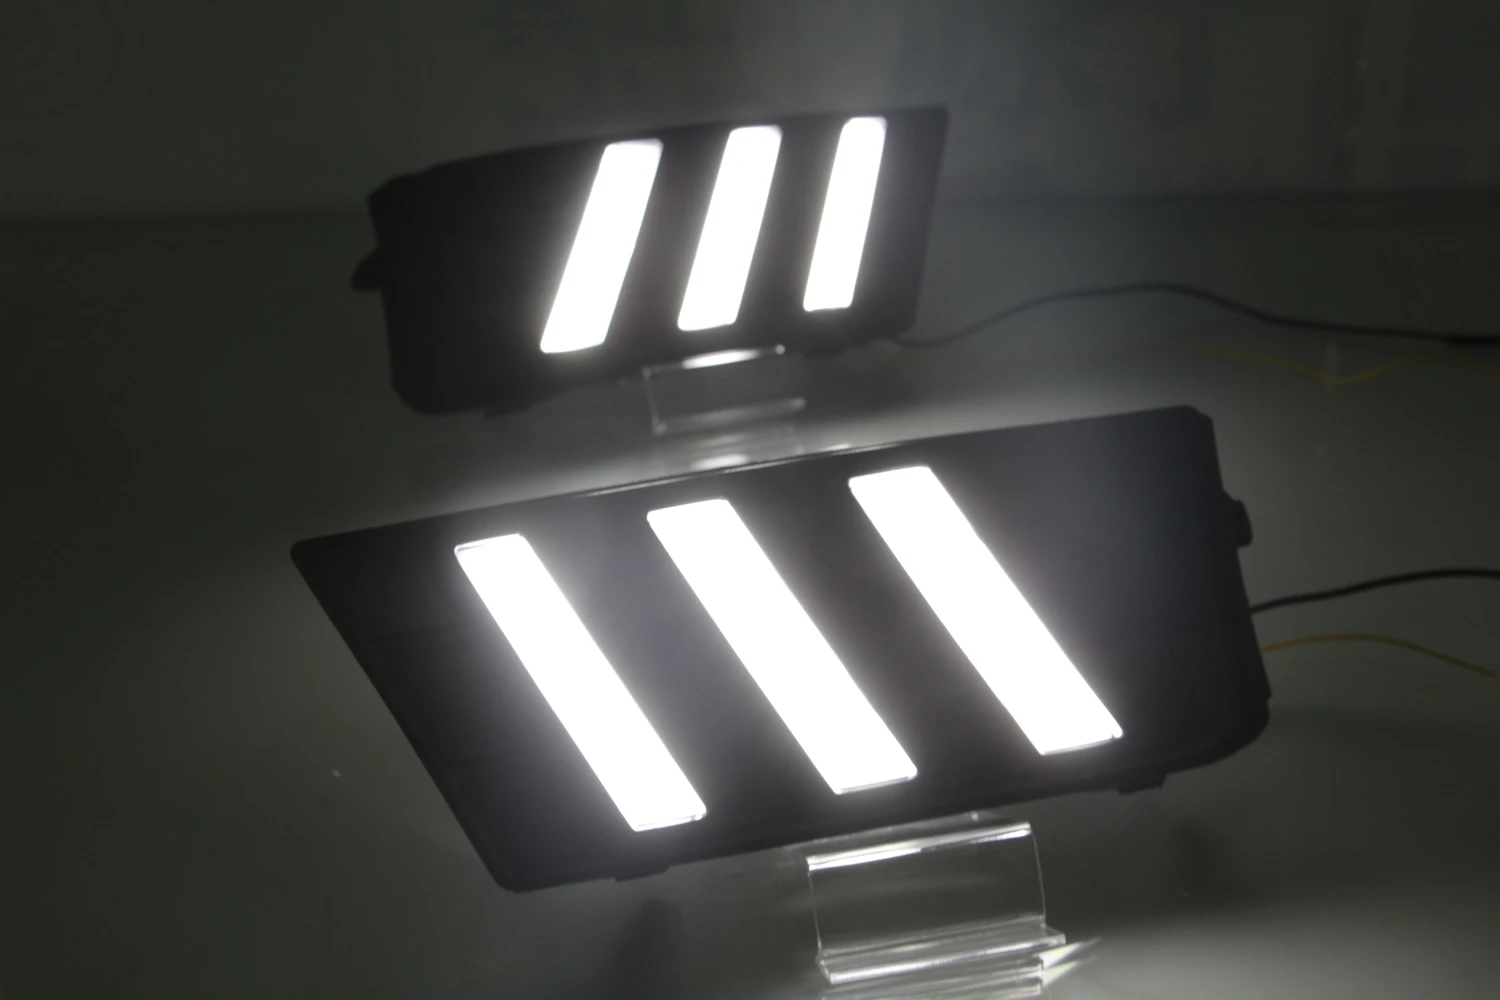 1 комплект фар бампера для Skoda Octavia дневного света~ 2018y автомобильные аксессуары светодиодный DRL фары для Octavia противотуманные фары